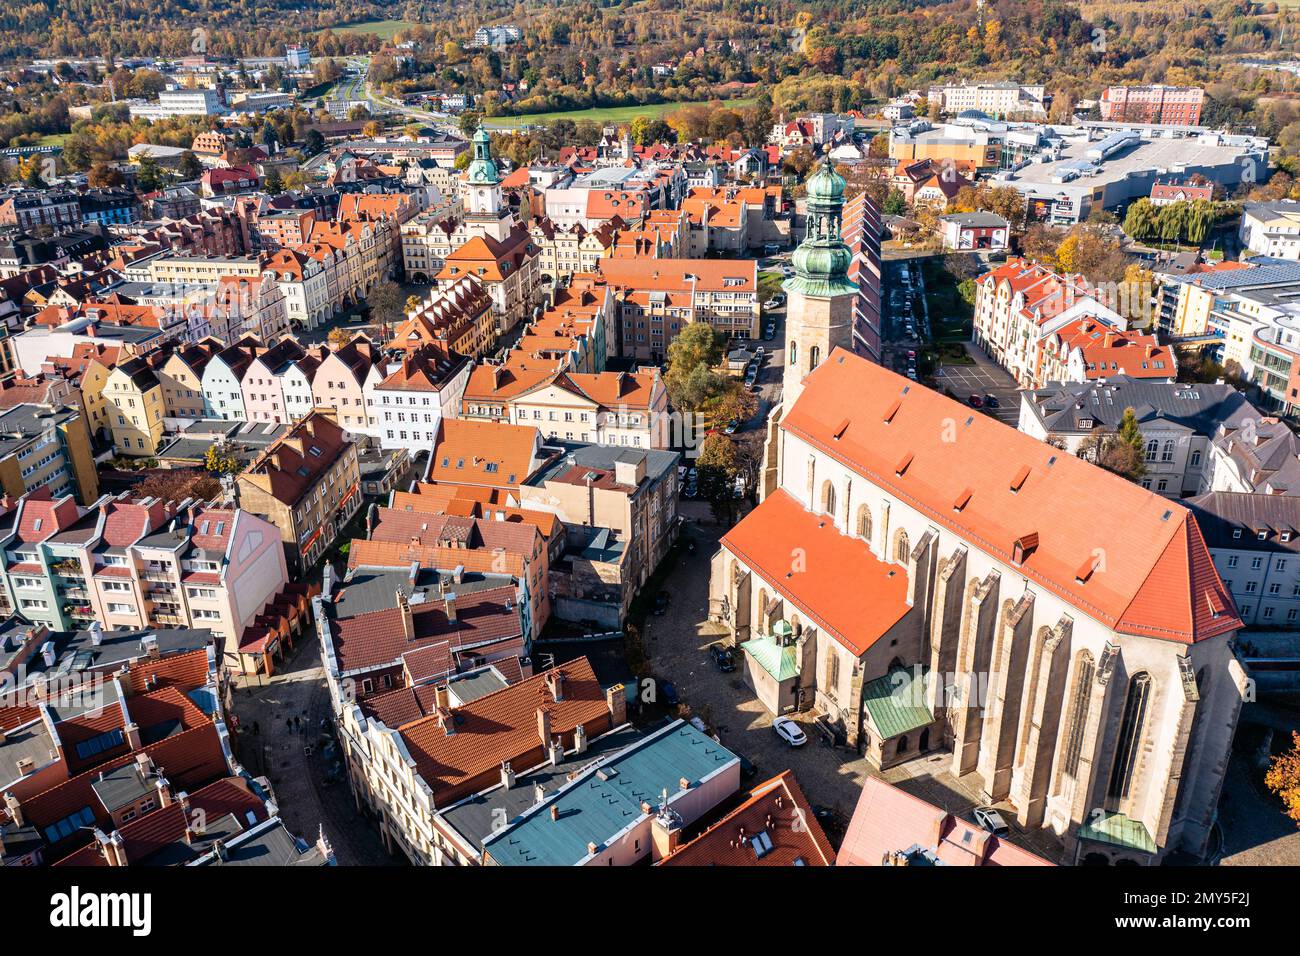 Jelenia Gora city center aerial view Stock Photo